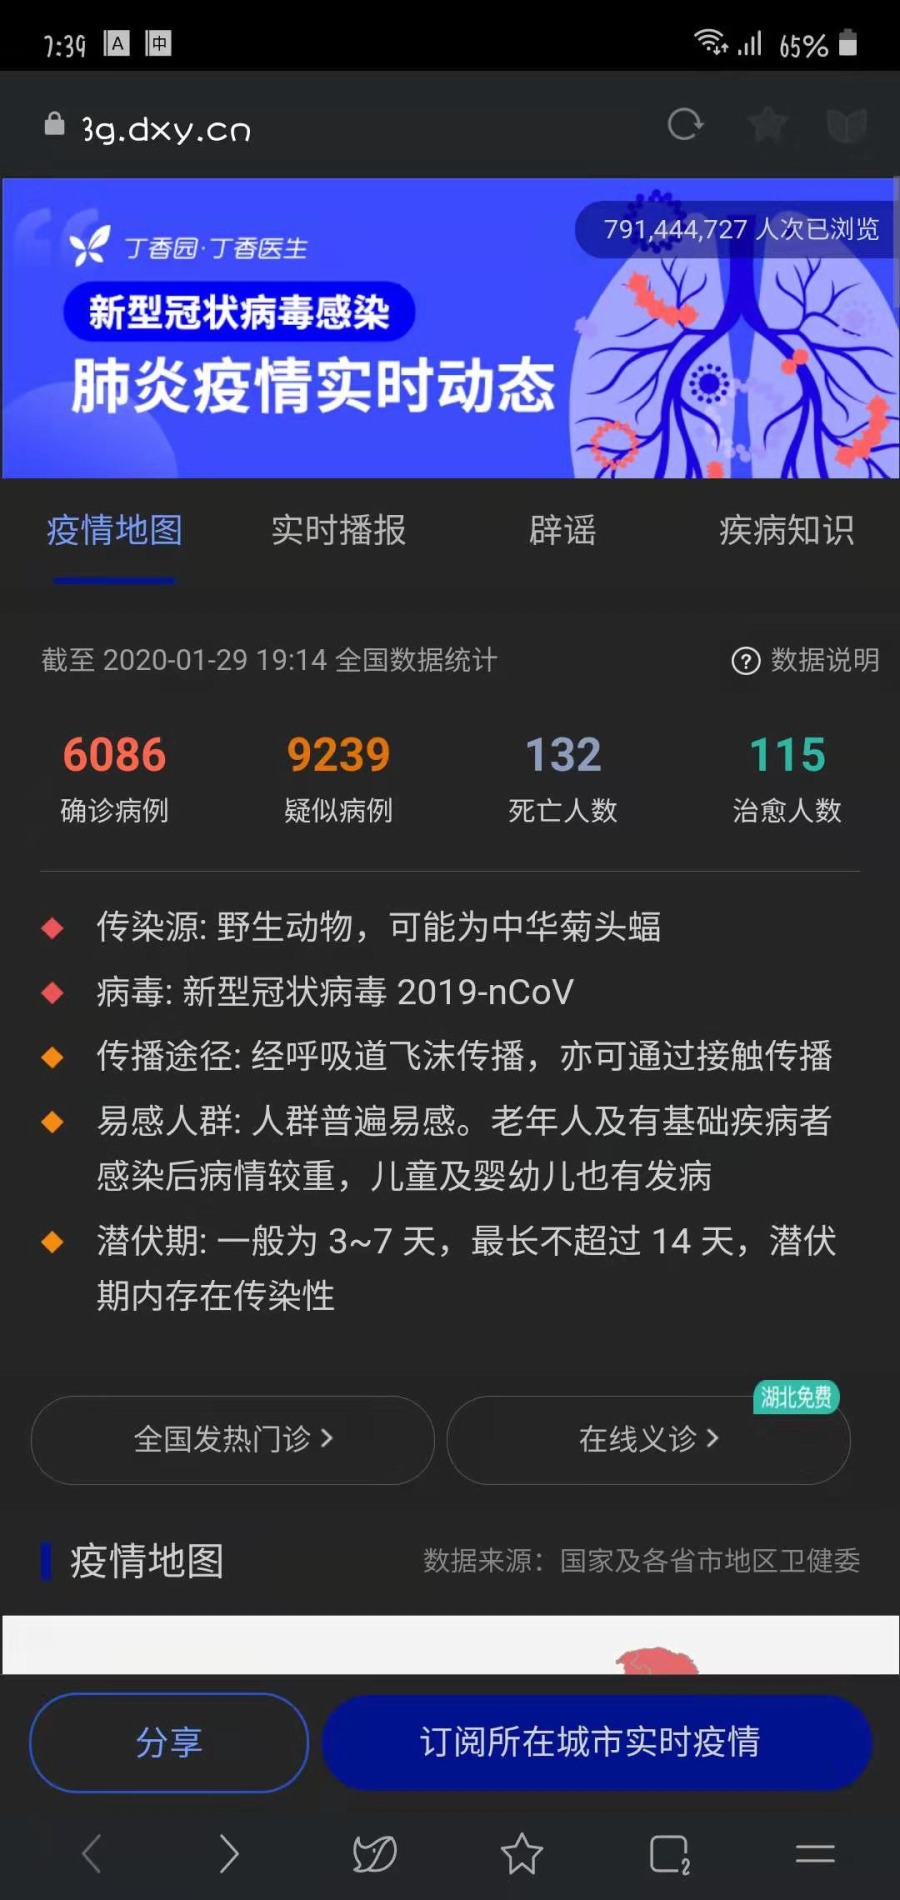 WeChat Image_20200129194303.jpg